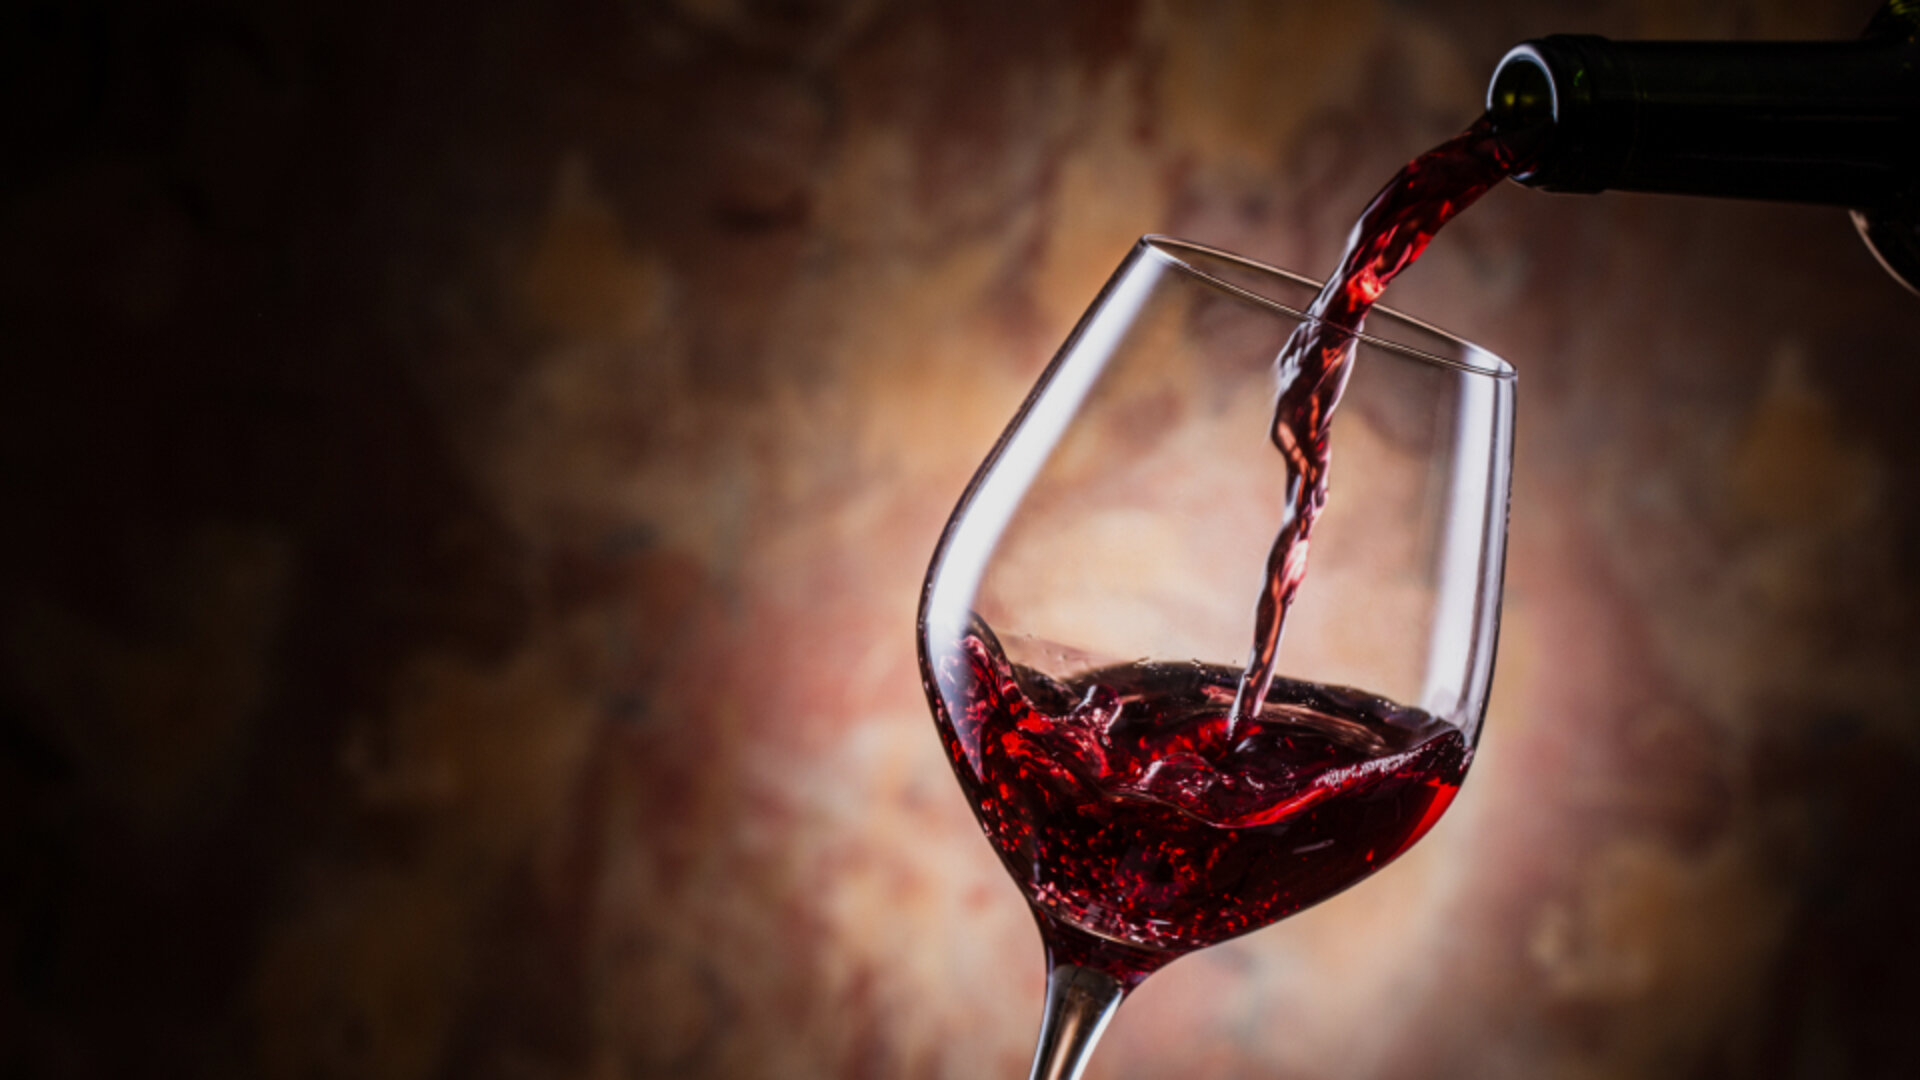 case - Unikke kunderejser gør forskellen for vinhandler